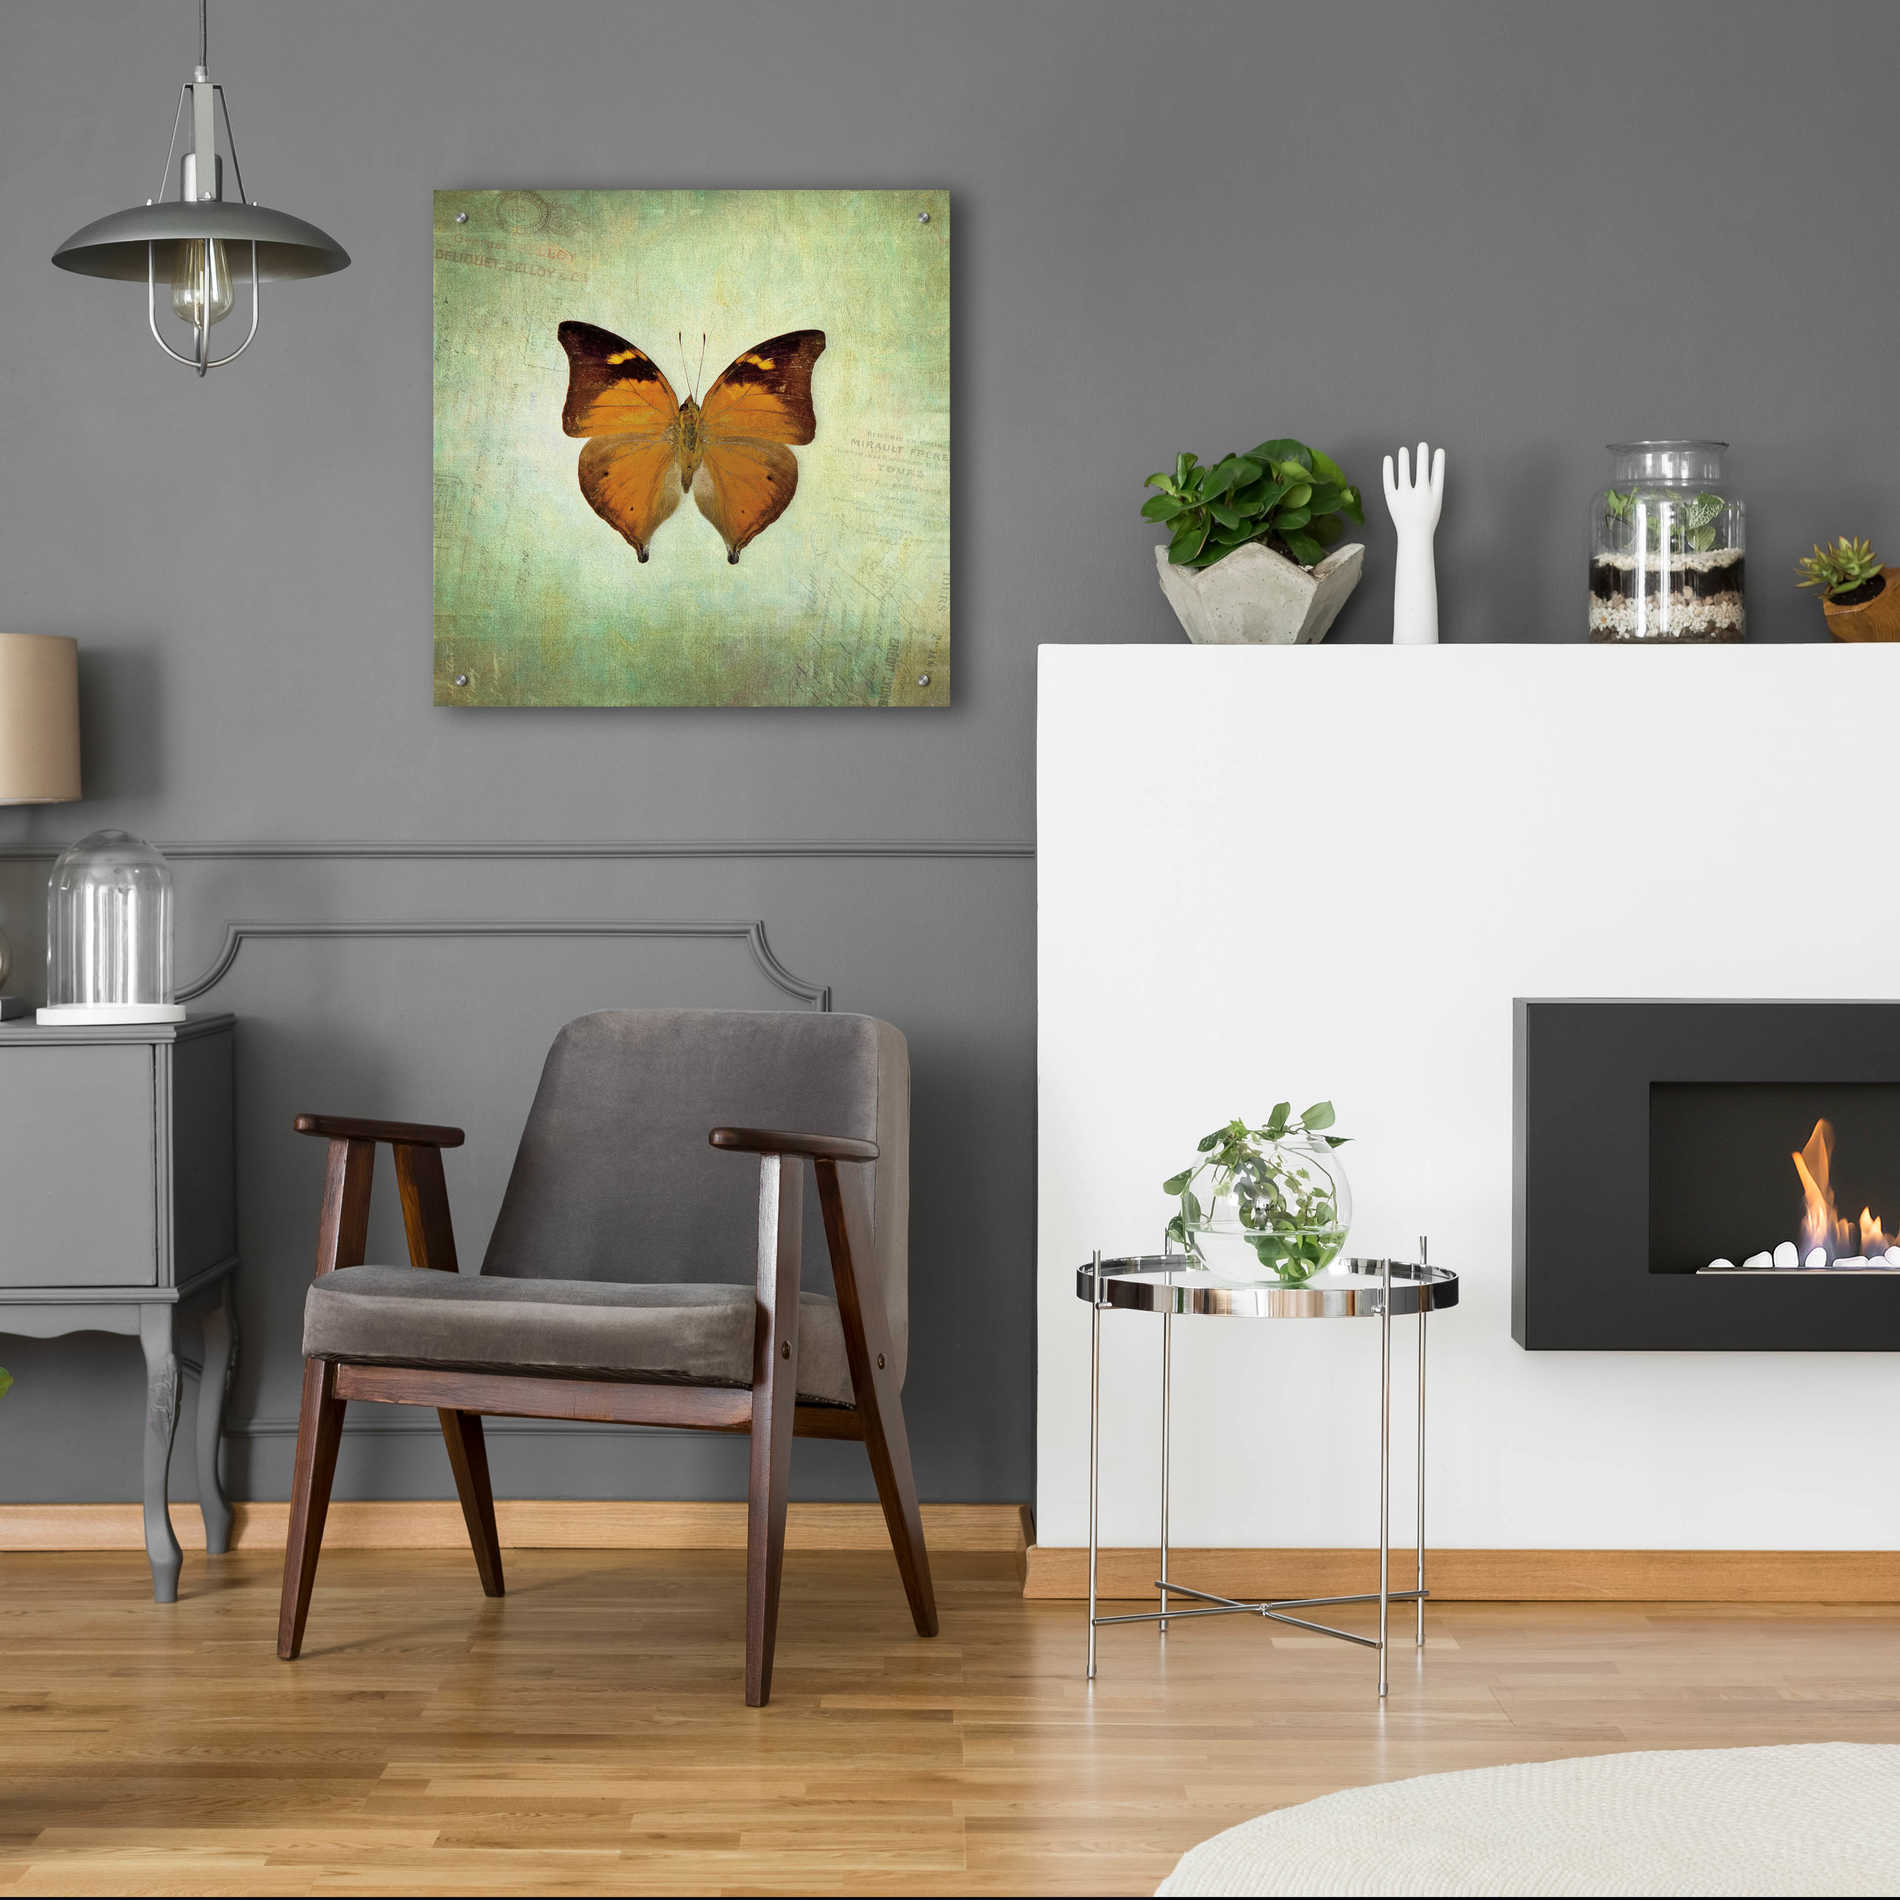 Epic Art 'French Butterfly VII' by Debra Van Swearingen, Acrylic Glass Wall Art,24x24